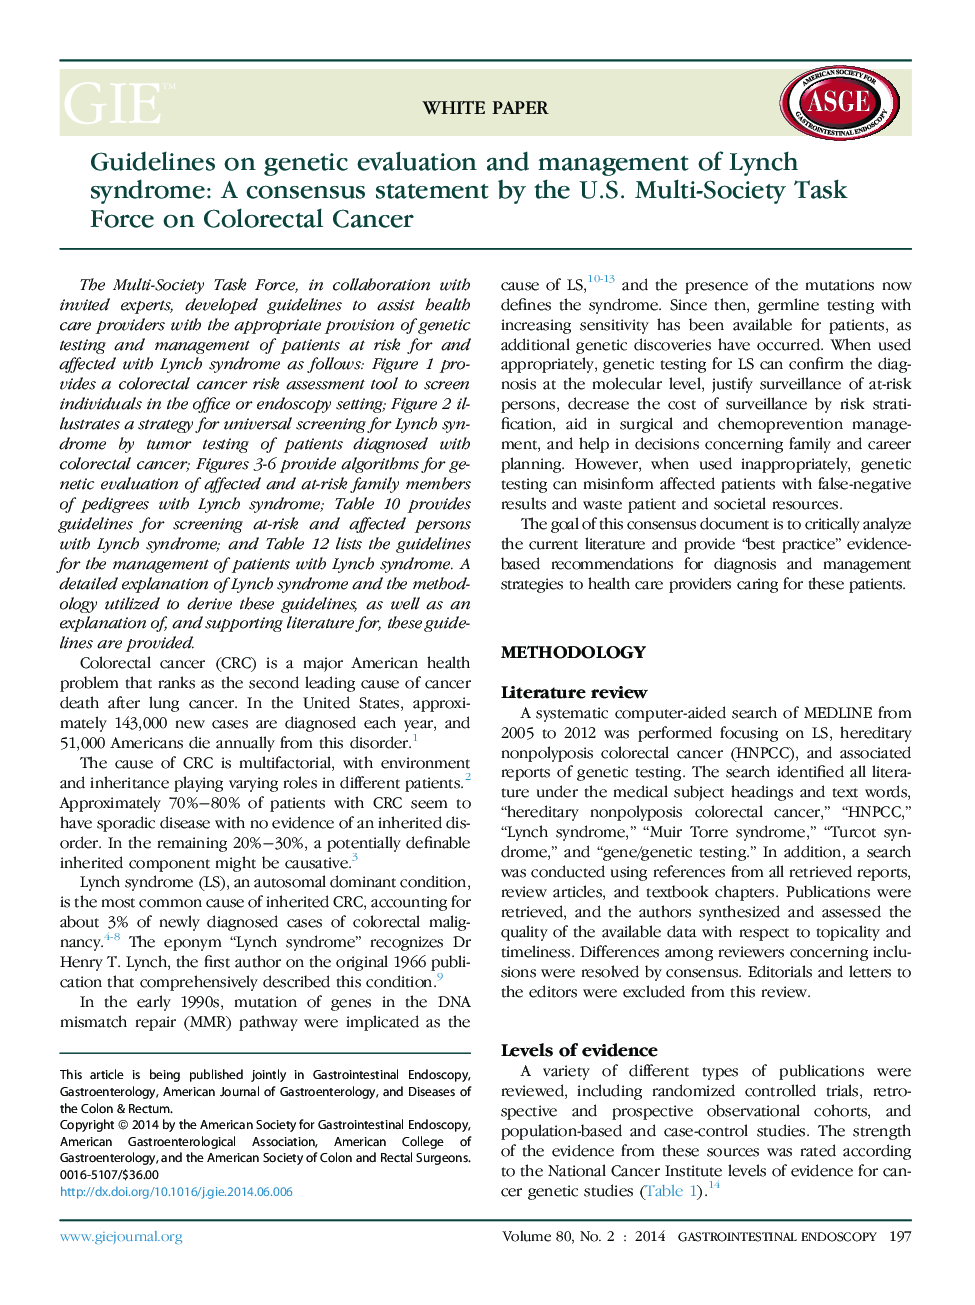 دستور العمل های ارزیابی ژنتیک و مدیریت سندرم لینچ: یک بیانیه مشترک از سوی گروه کاری چندجملهای ایالات متحده در مورد سرطان کولورکتال 